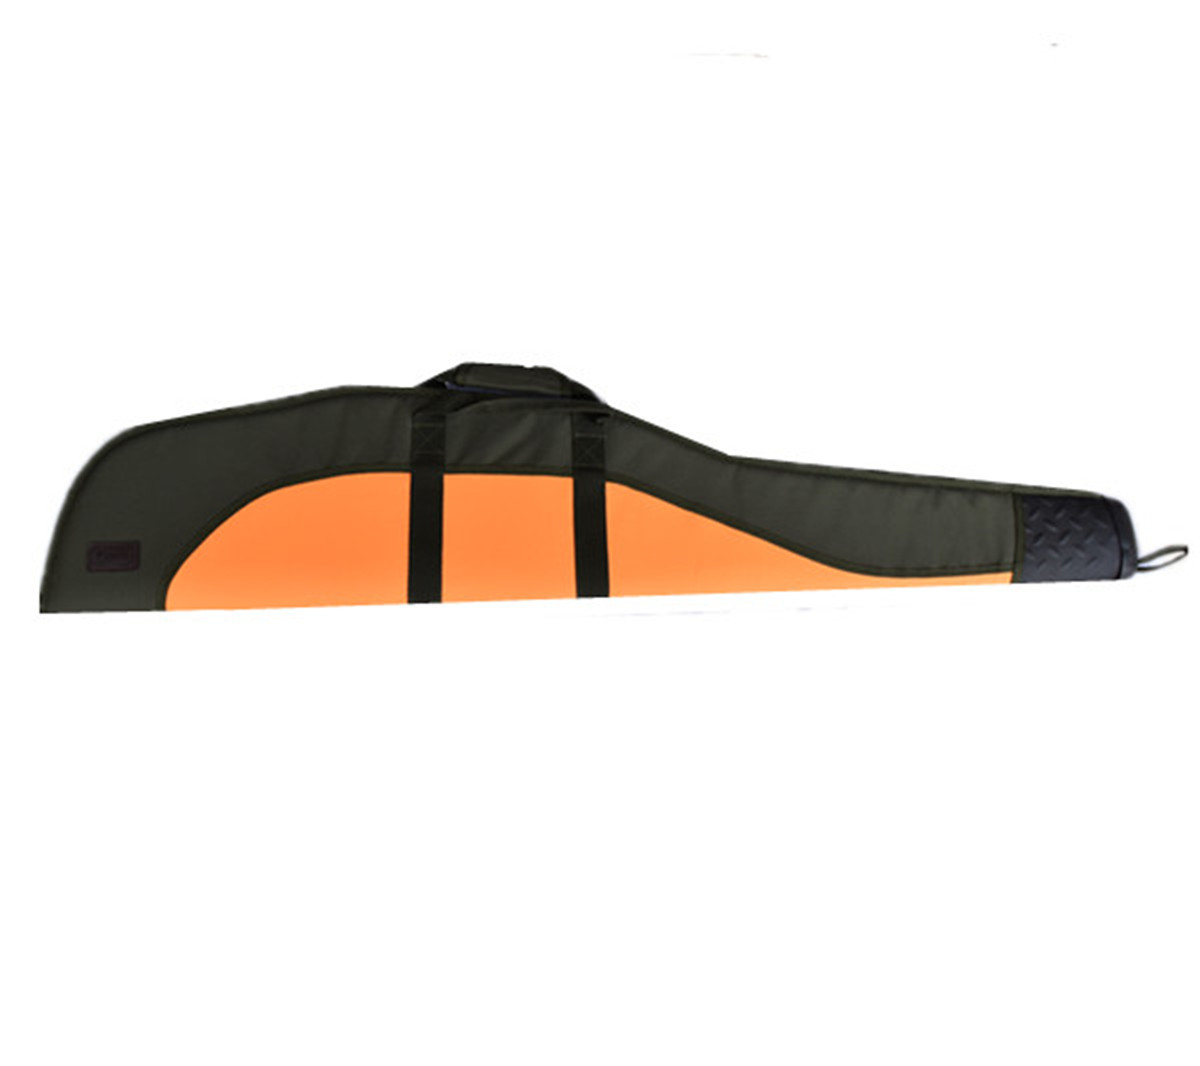 Hunting Shooting bag tivingê oxford waterproof 50 inch